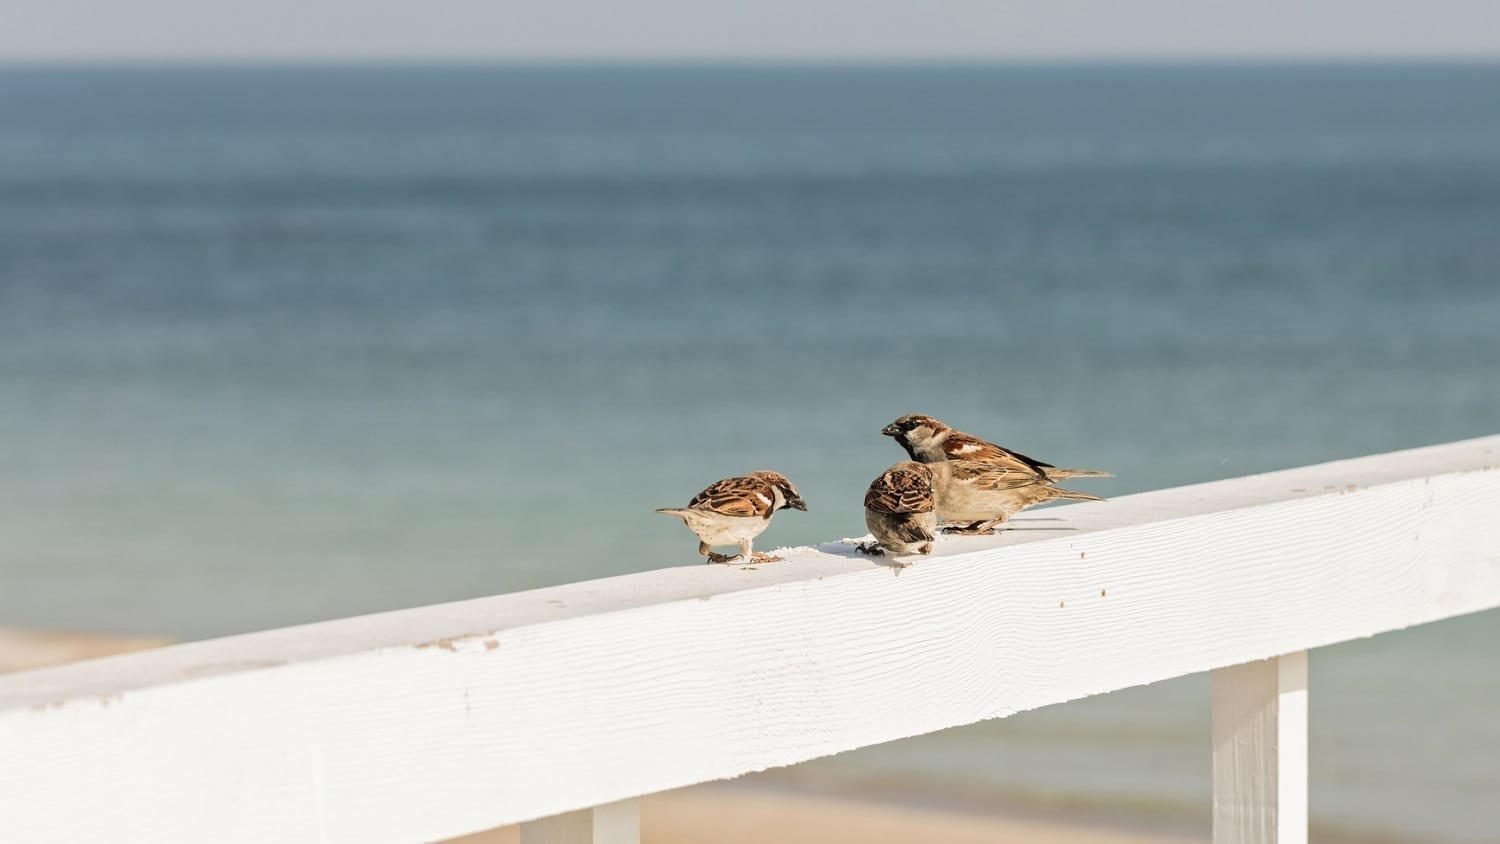 Sparrows on a rail near the ocean: ID 89586386 © Oleh29photo